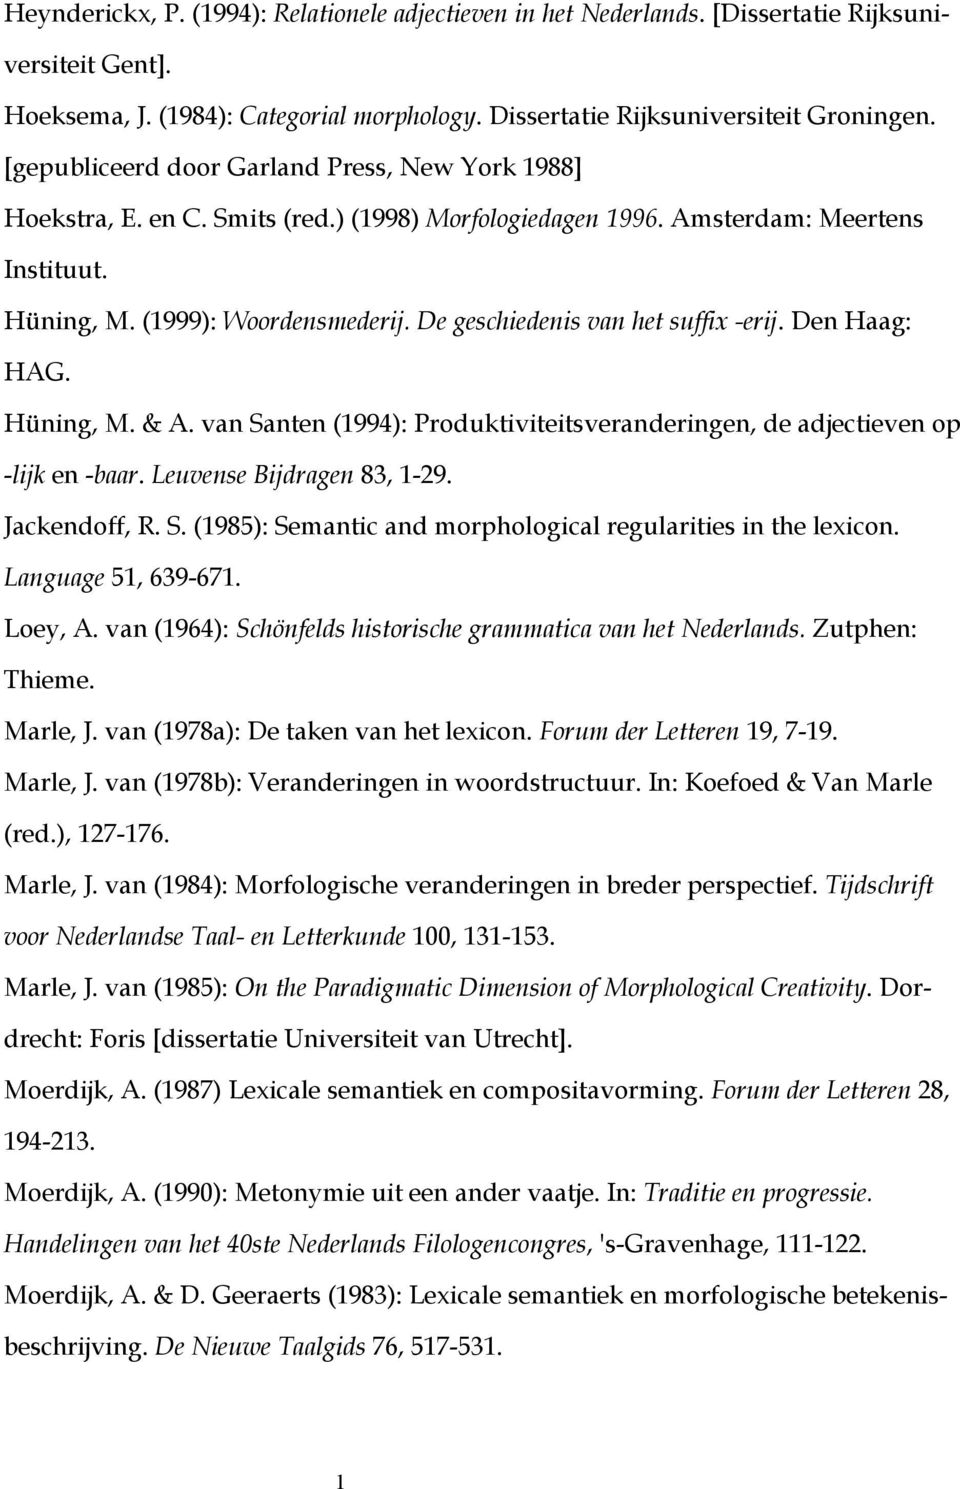 De geschiedenis van het suffix -erij. Den Haag: HAG. Hüning, M. & A. van Santen (994): Produktiviteitsveranderingen, de adjectieven op -lijk en -baar. Leuvense Bijdragen 83, -29. Jackendoff, R. S. (985): Semantic and morphological regularities in the lexicon.